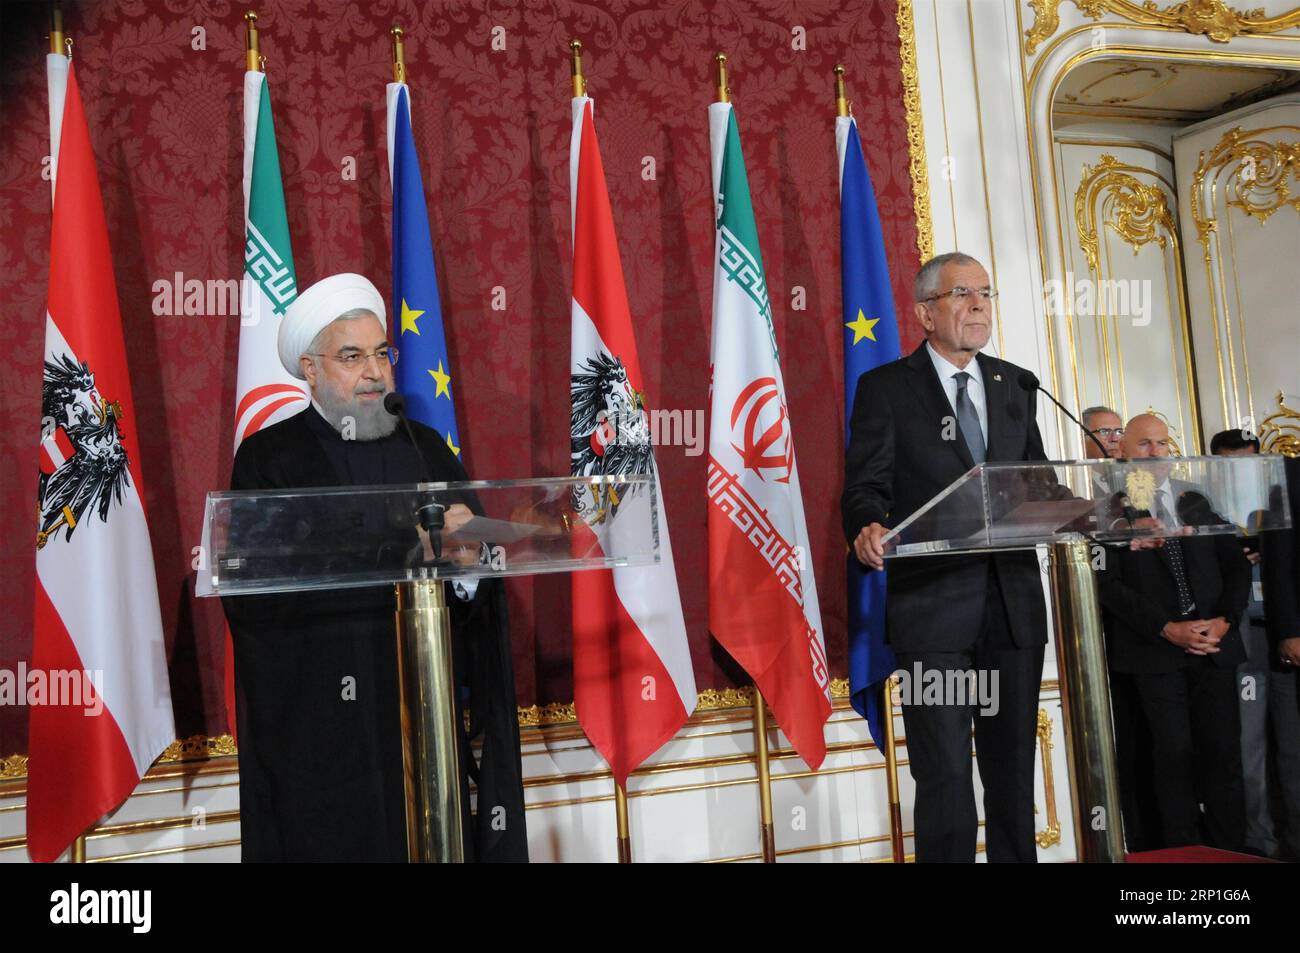 (180704) -- VIENNE, le 4 juillet 2018 -- le président iranien Hassan Rouhani (à gauche) et son homologue autrichien Alexander Van der Bellen assistent à une conférence de presse à Vienne, Autriche, le 4 juillet 2018. Hassan Rouhani a rassuré mercredi son pays sur l intention de s en tenir à l accord nucléaire iranien malgré un récent retrait des États-Unis. AUTRICHE-VIENNE-IRAN-PRÉSIDENT-ACCORD NUCLÉAIRE LIUXXIANG PUBLICATIONXNOTXINXCHN Banque D'Images